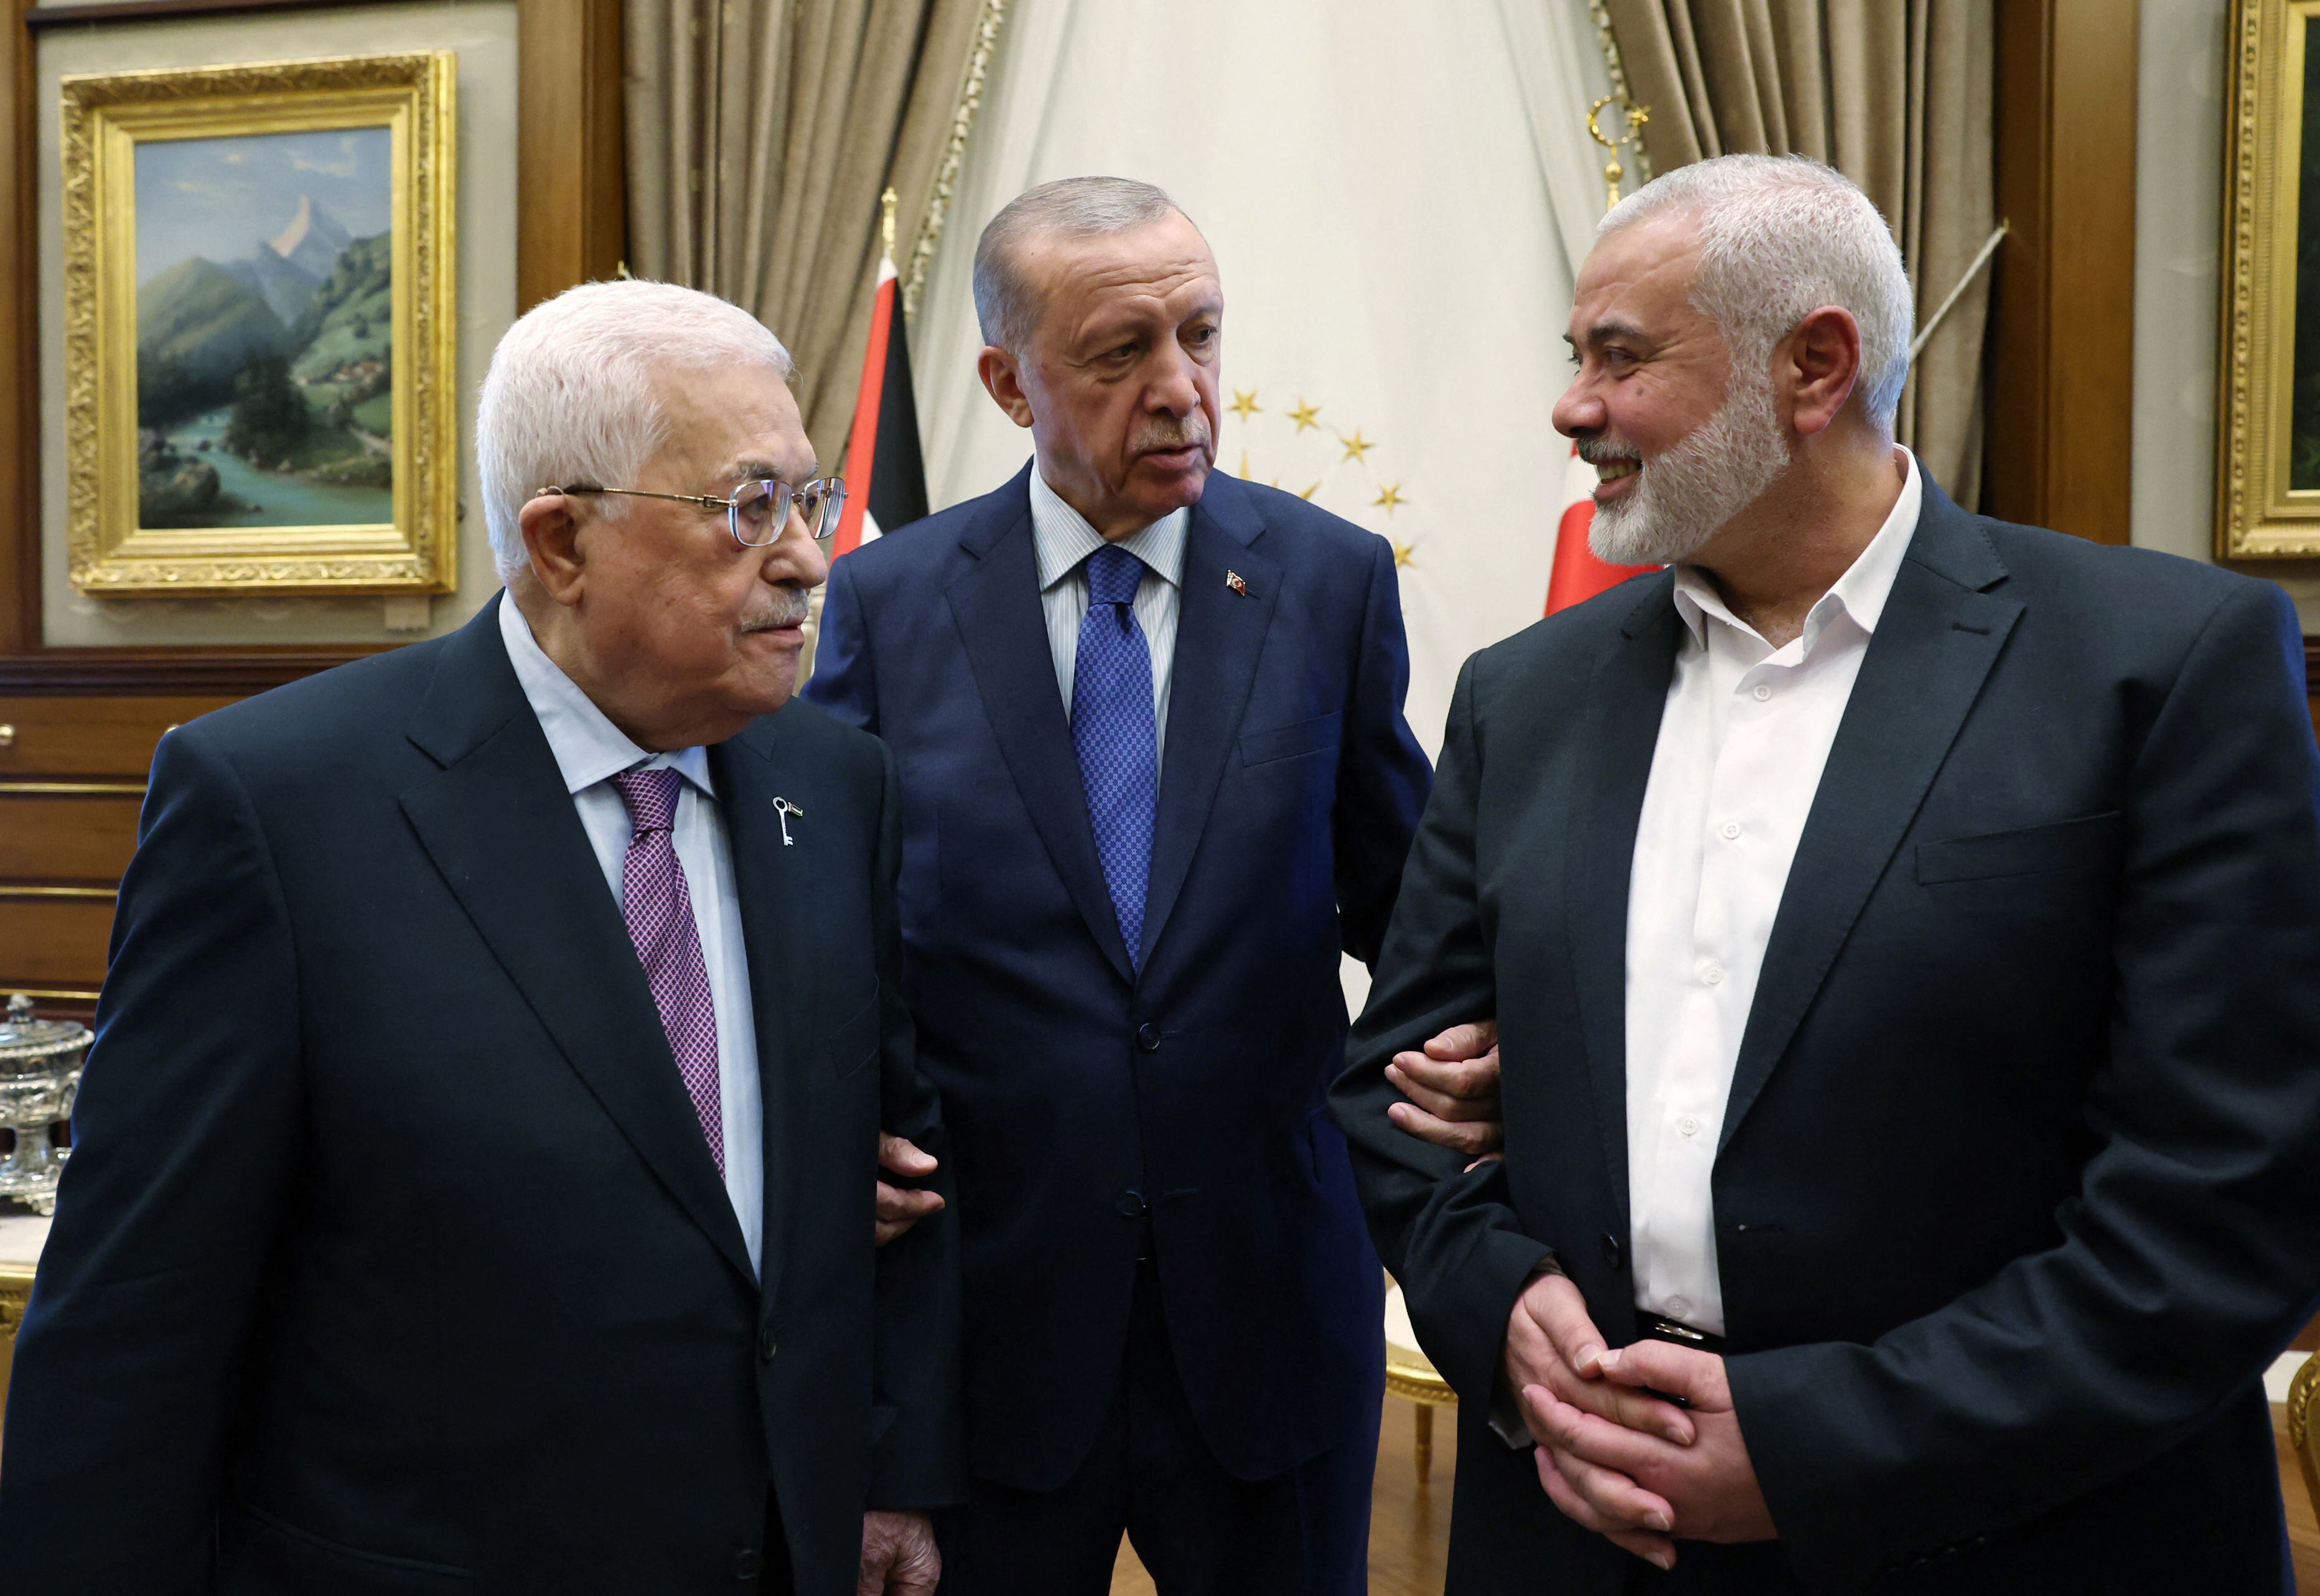 El presidente turco Recep Tayyip Erdogan (centro) reuniéndose con el presidente palestino Mahmoud Abbas (izquierda) y el líder del movimiento palestino Hamas Ismail Haniyeh (derecha) en el Complejo Presidencial en Ankara.